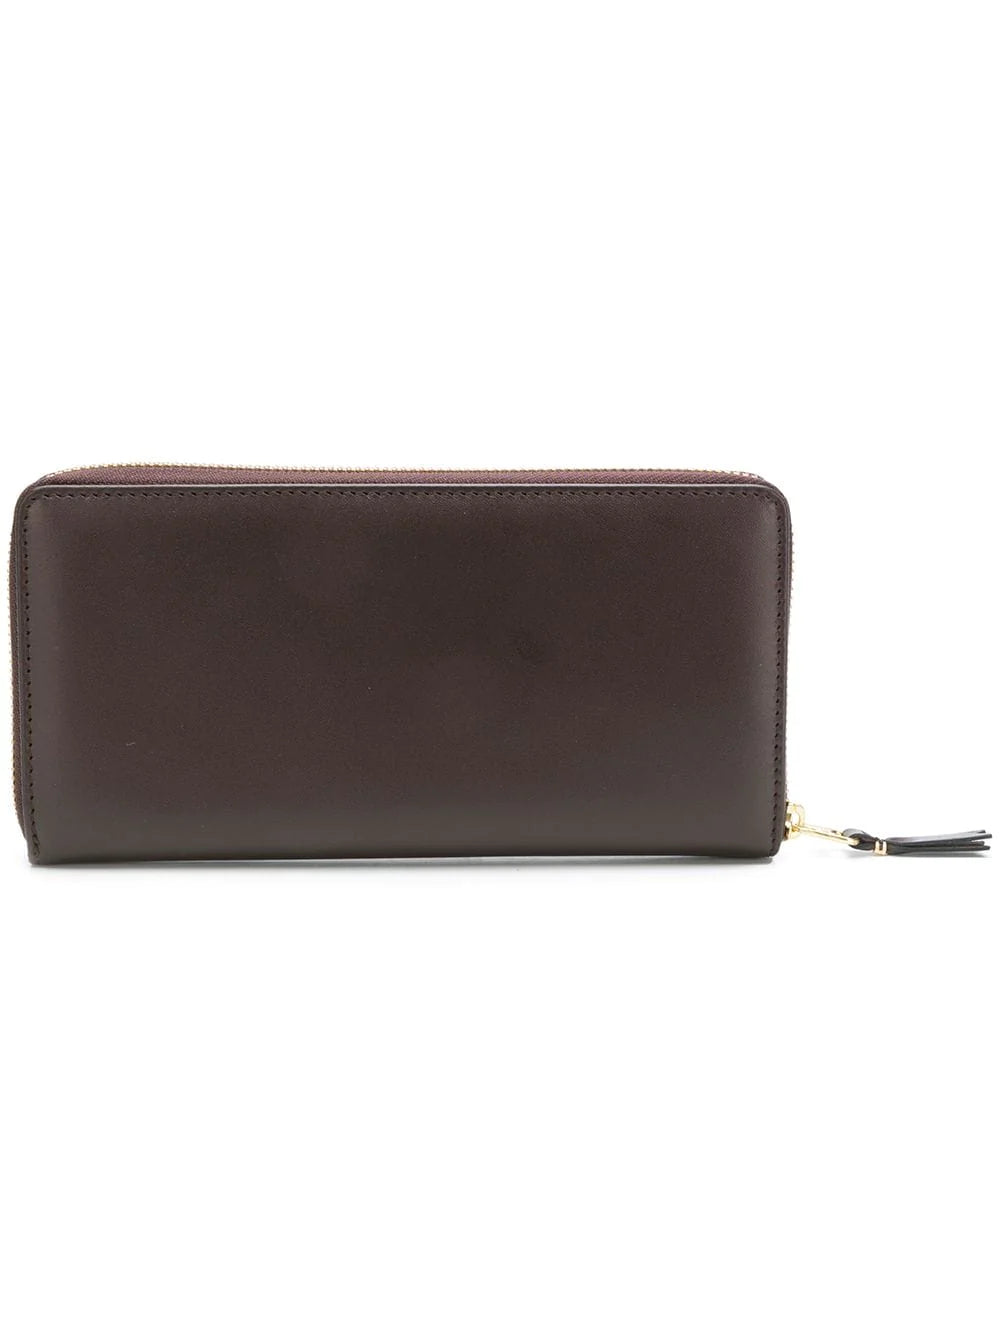 Comme Des Garcons Wallet Classic Leather Line Brown Unisex